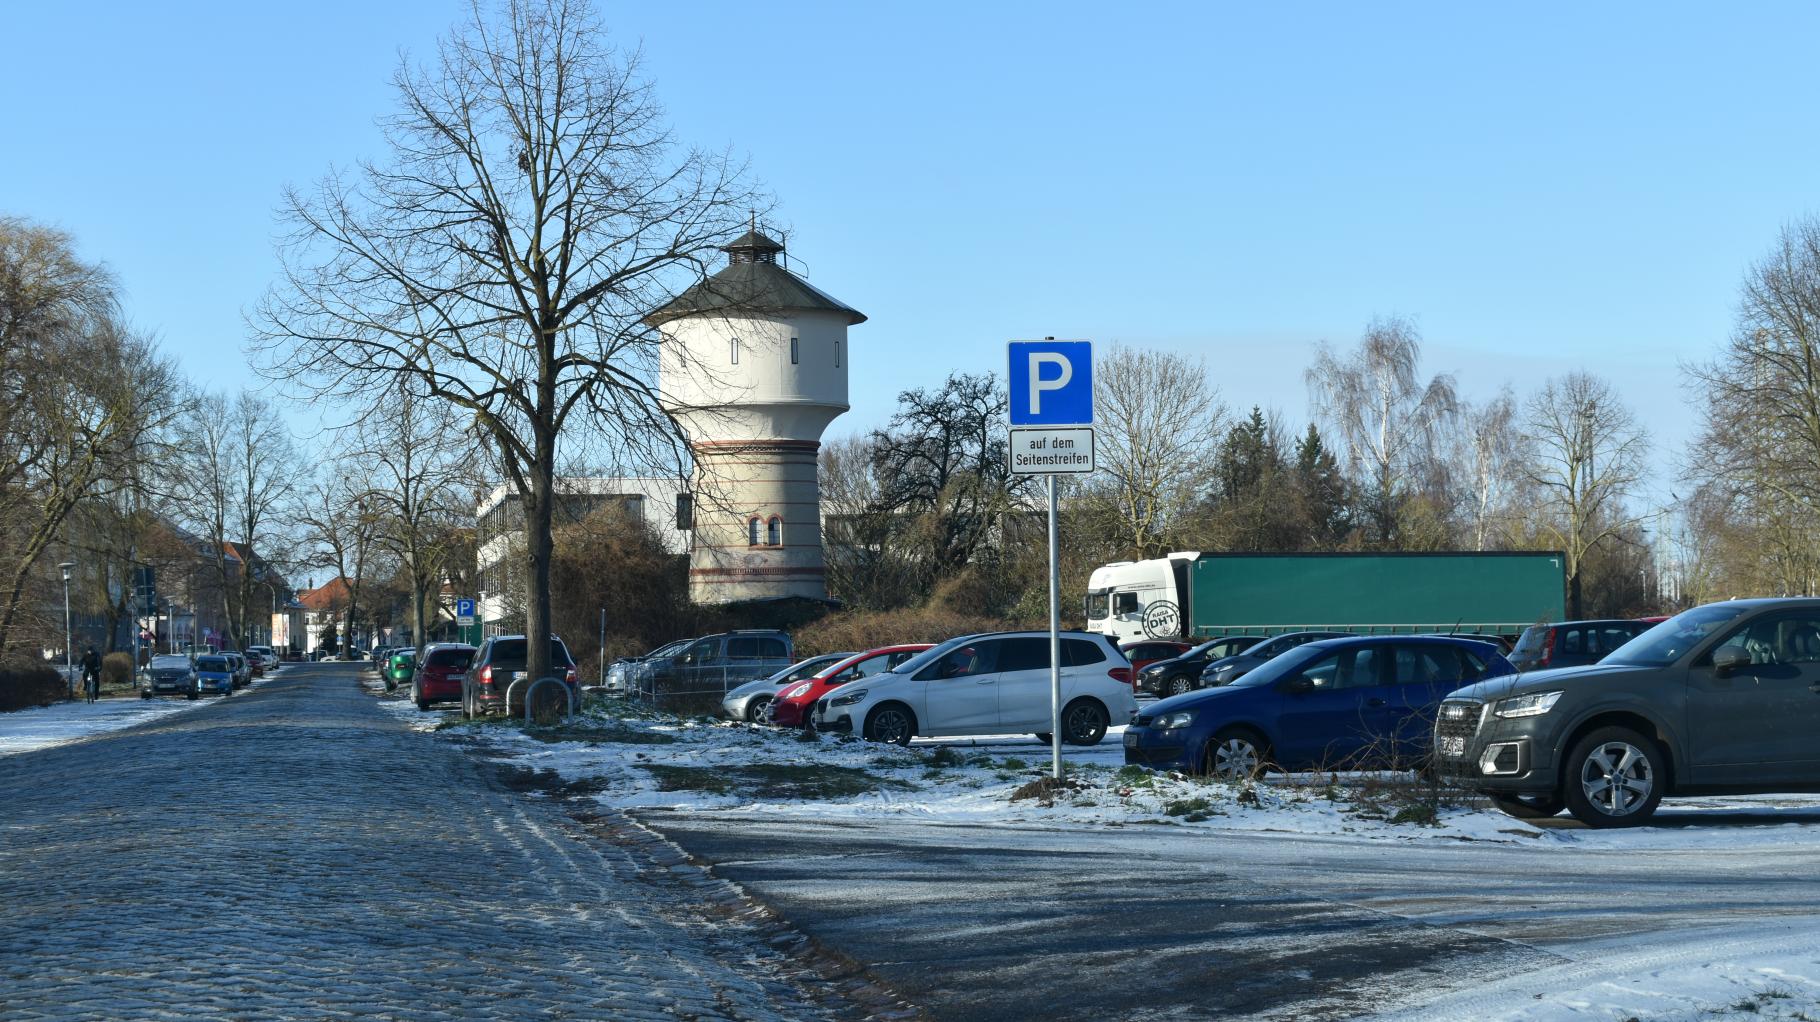 Autokorsos fahren aus Güstrow und Teterow nach Rostock